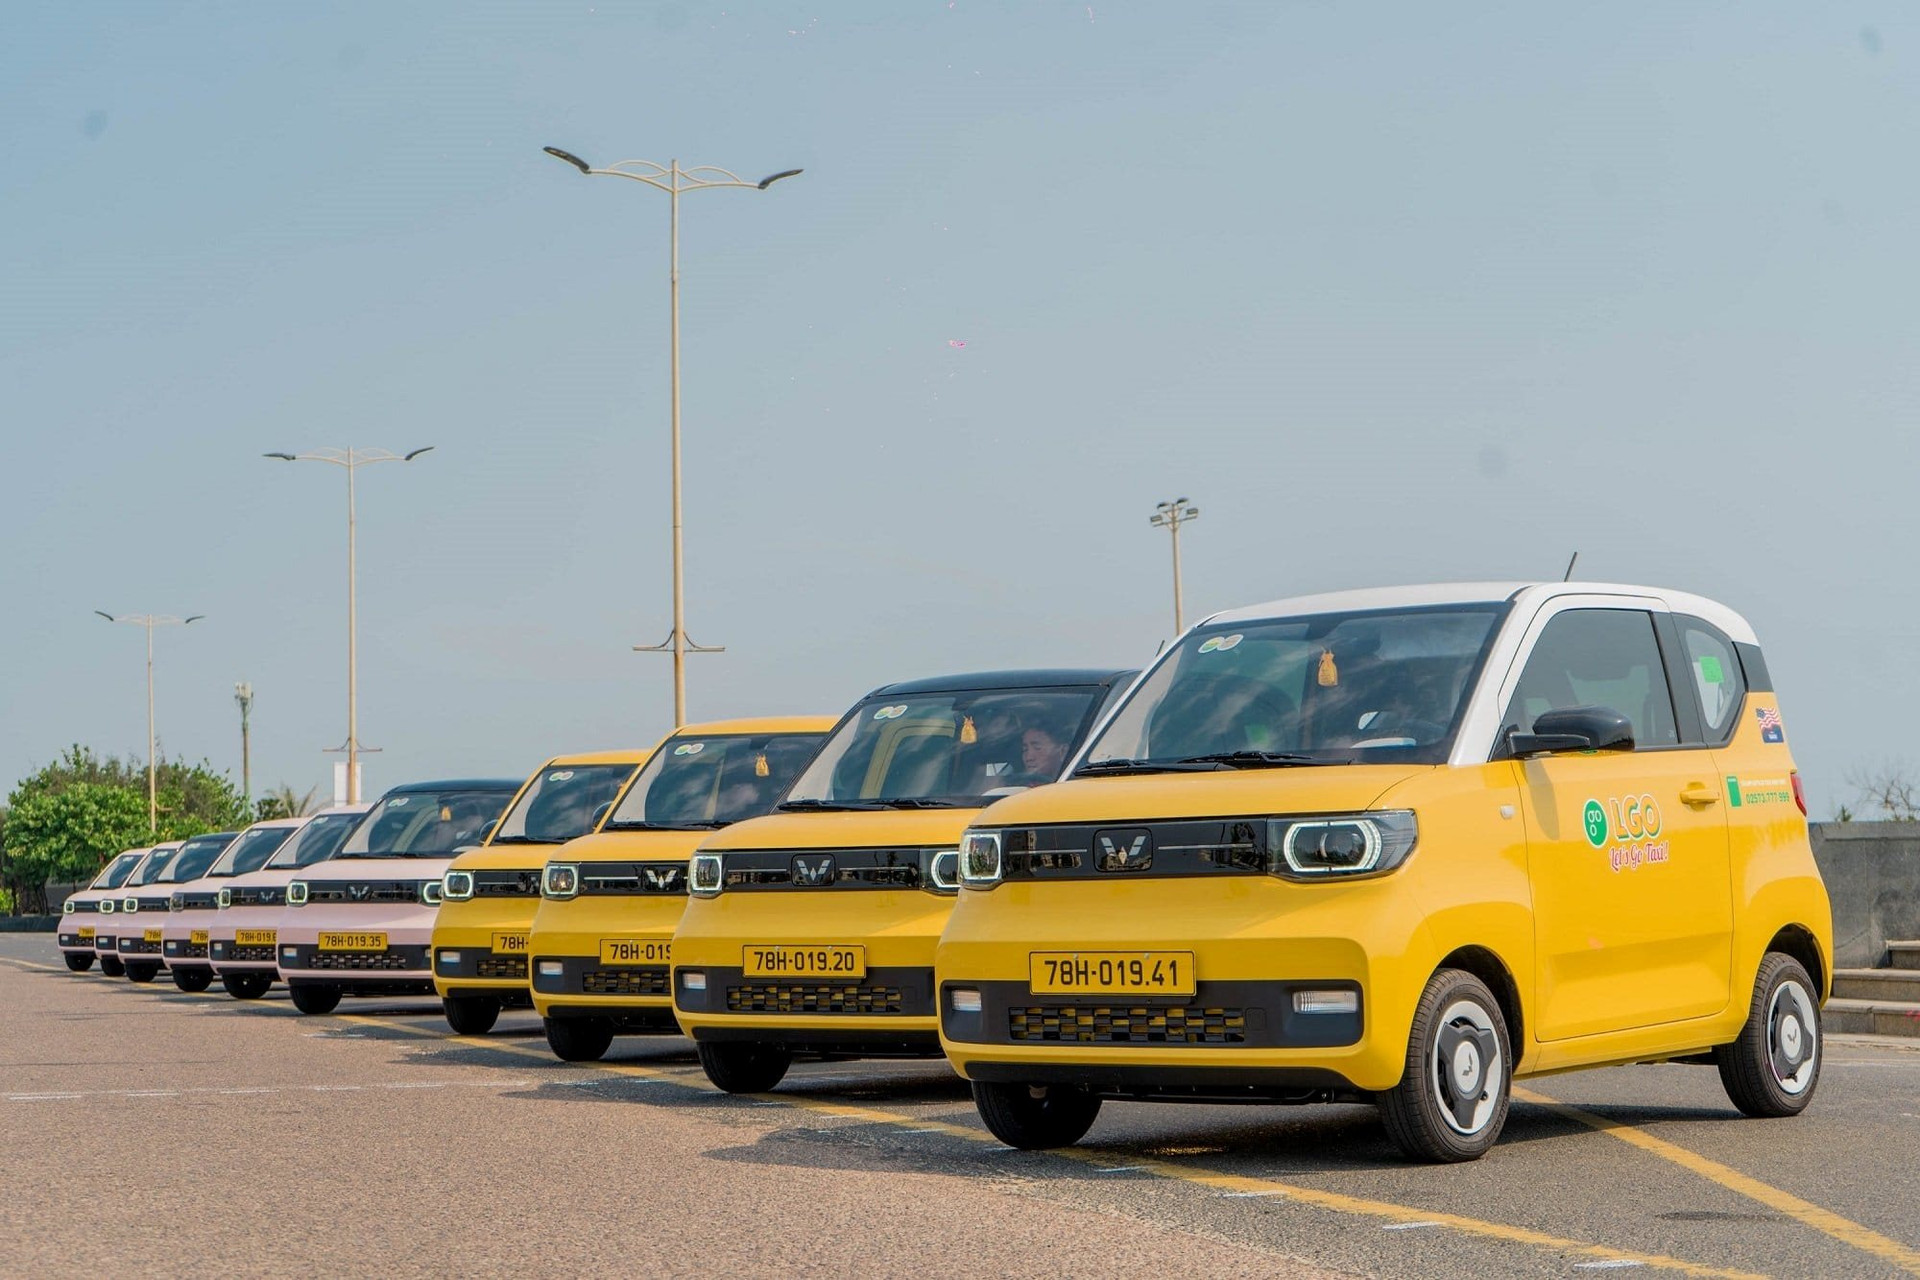 Giá từ 8.000 đồng/km, cước của taxi điện mini đầu tiên trên thị trường Việt đứng ở đâu so với GSM, Grab và taxi truyền thống?- Ảnh 1.